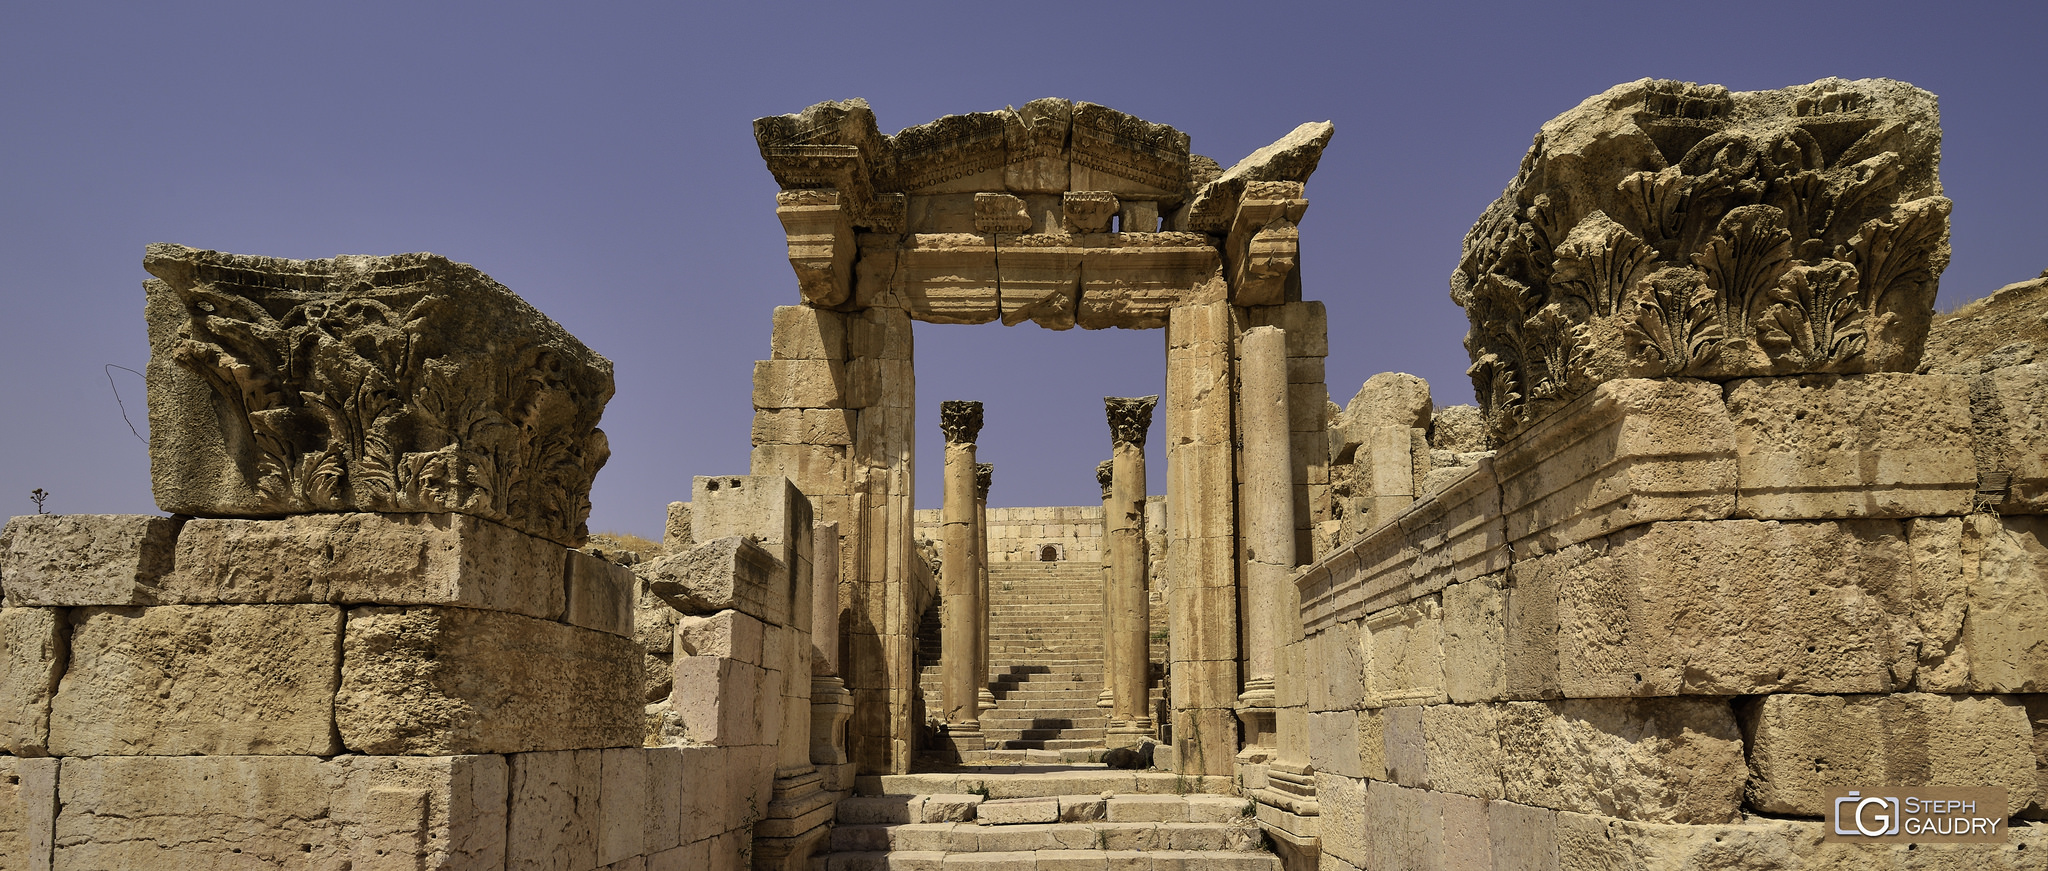 Jerash (JOR) Le temple de Dionysos [Klicken Sie hier, um die Diashow zu starten]